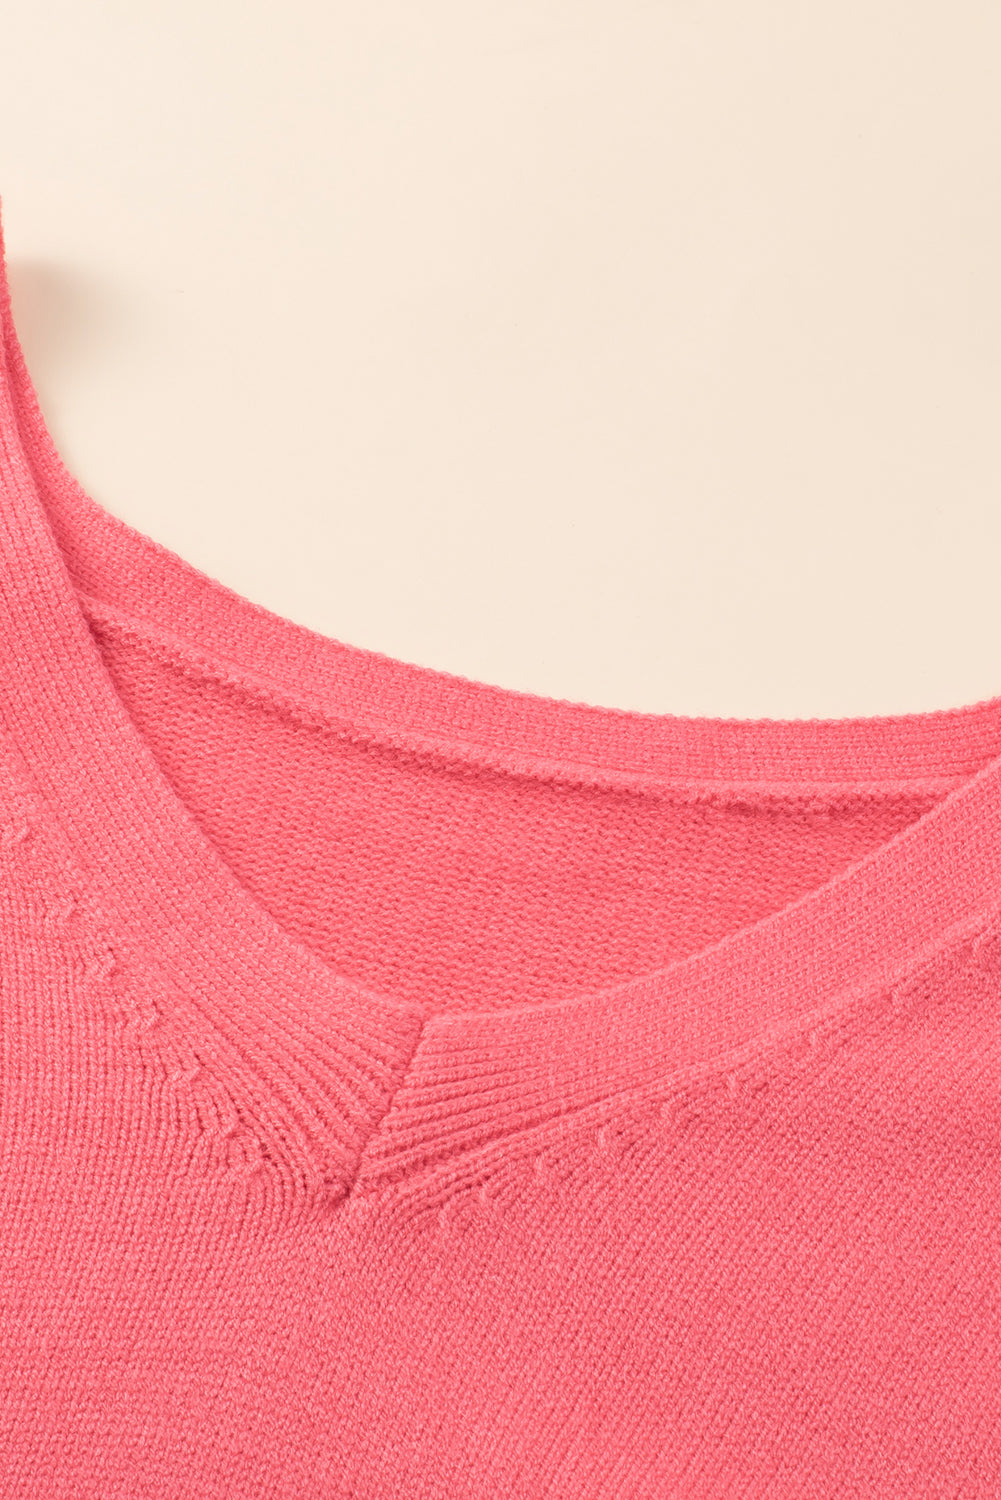 Rožnat pulover velike velikosti z v-izrezom in spuščenimi rameni